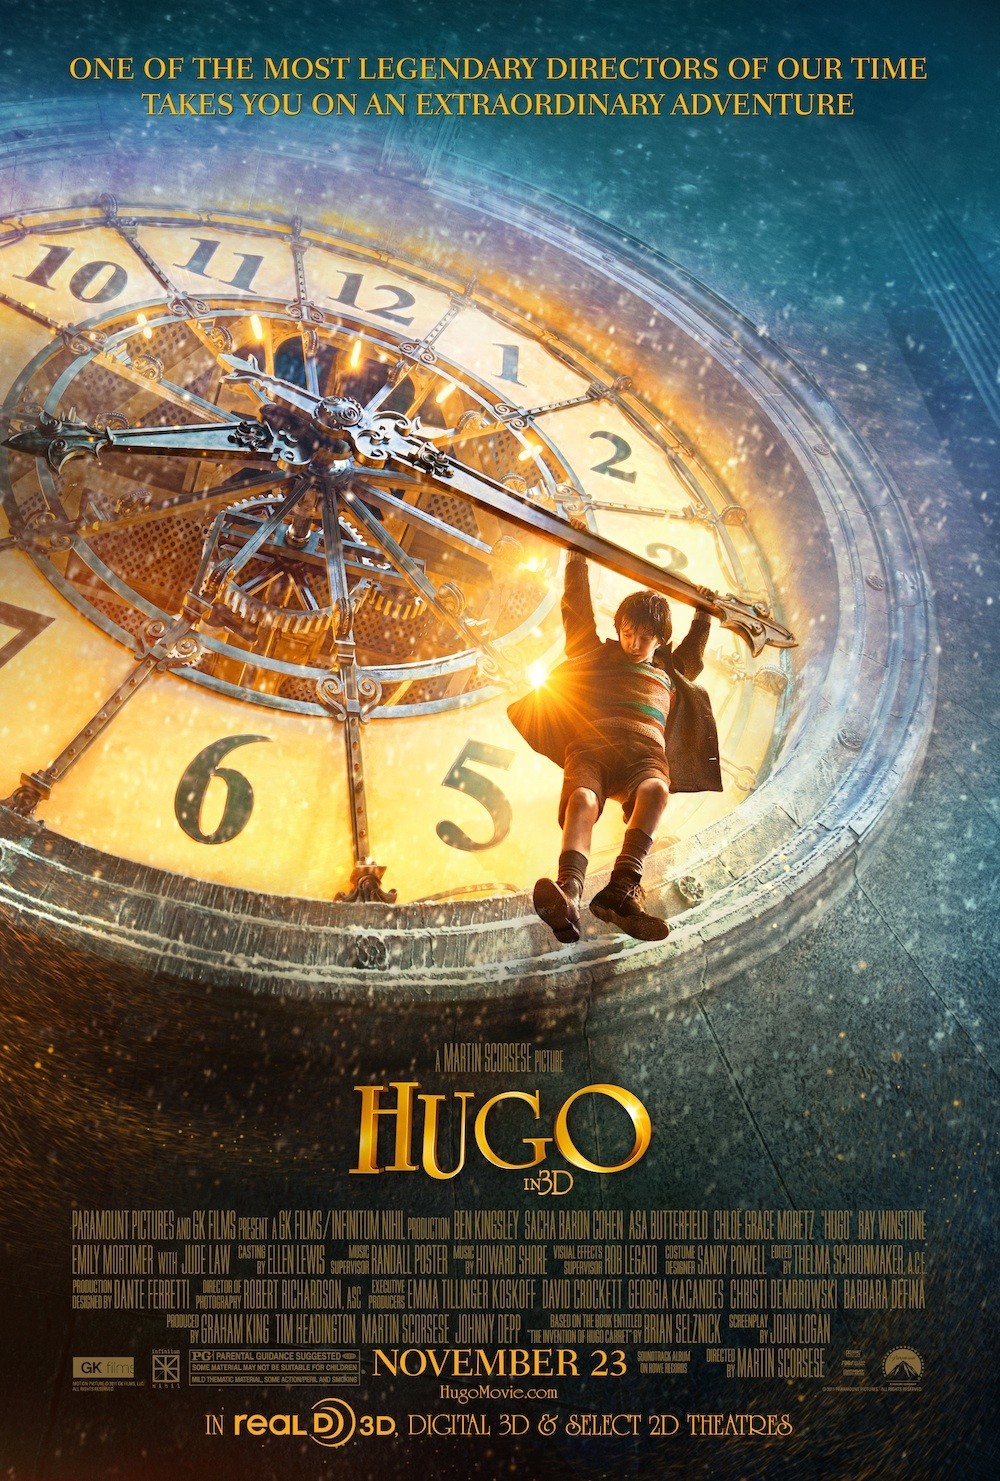 ดูหนังออนไลน์ฟรี Hugo 2011 ปริศนามนุษย์กลของฮิวโก้ moviehdfree